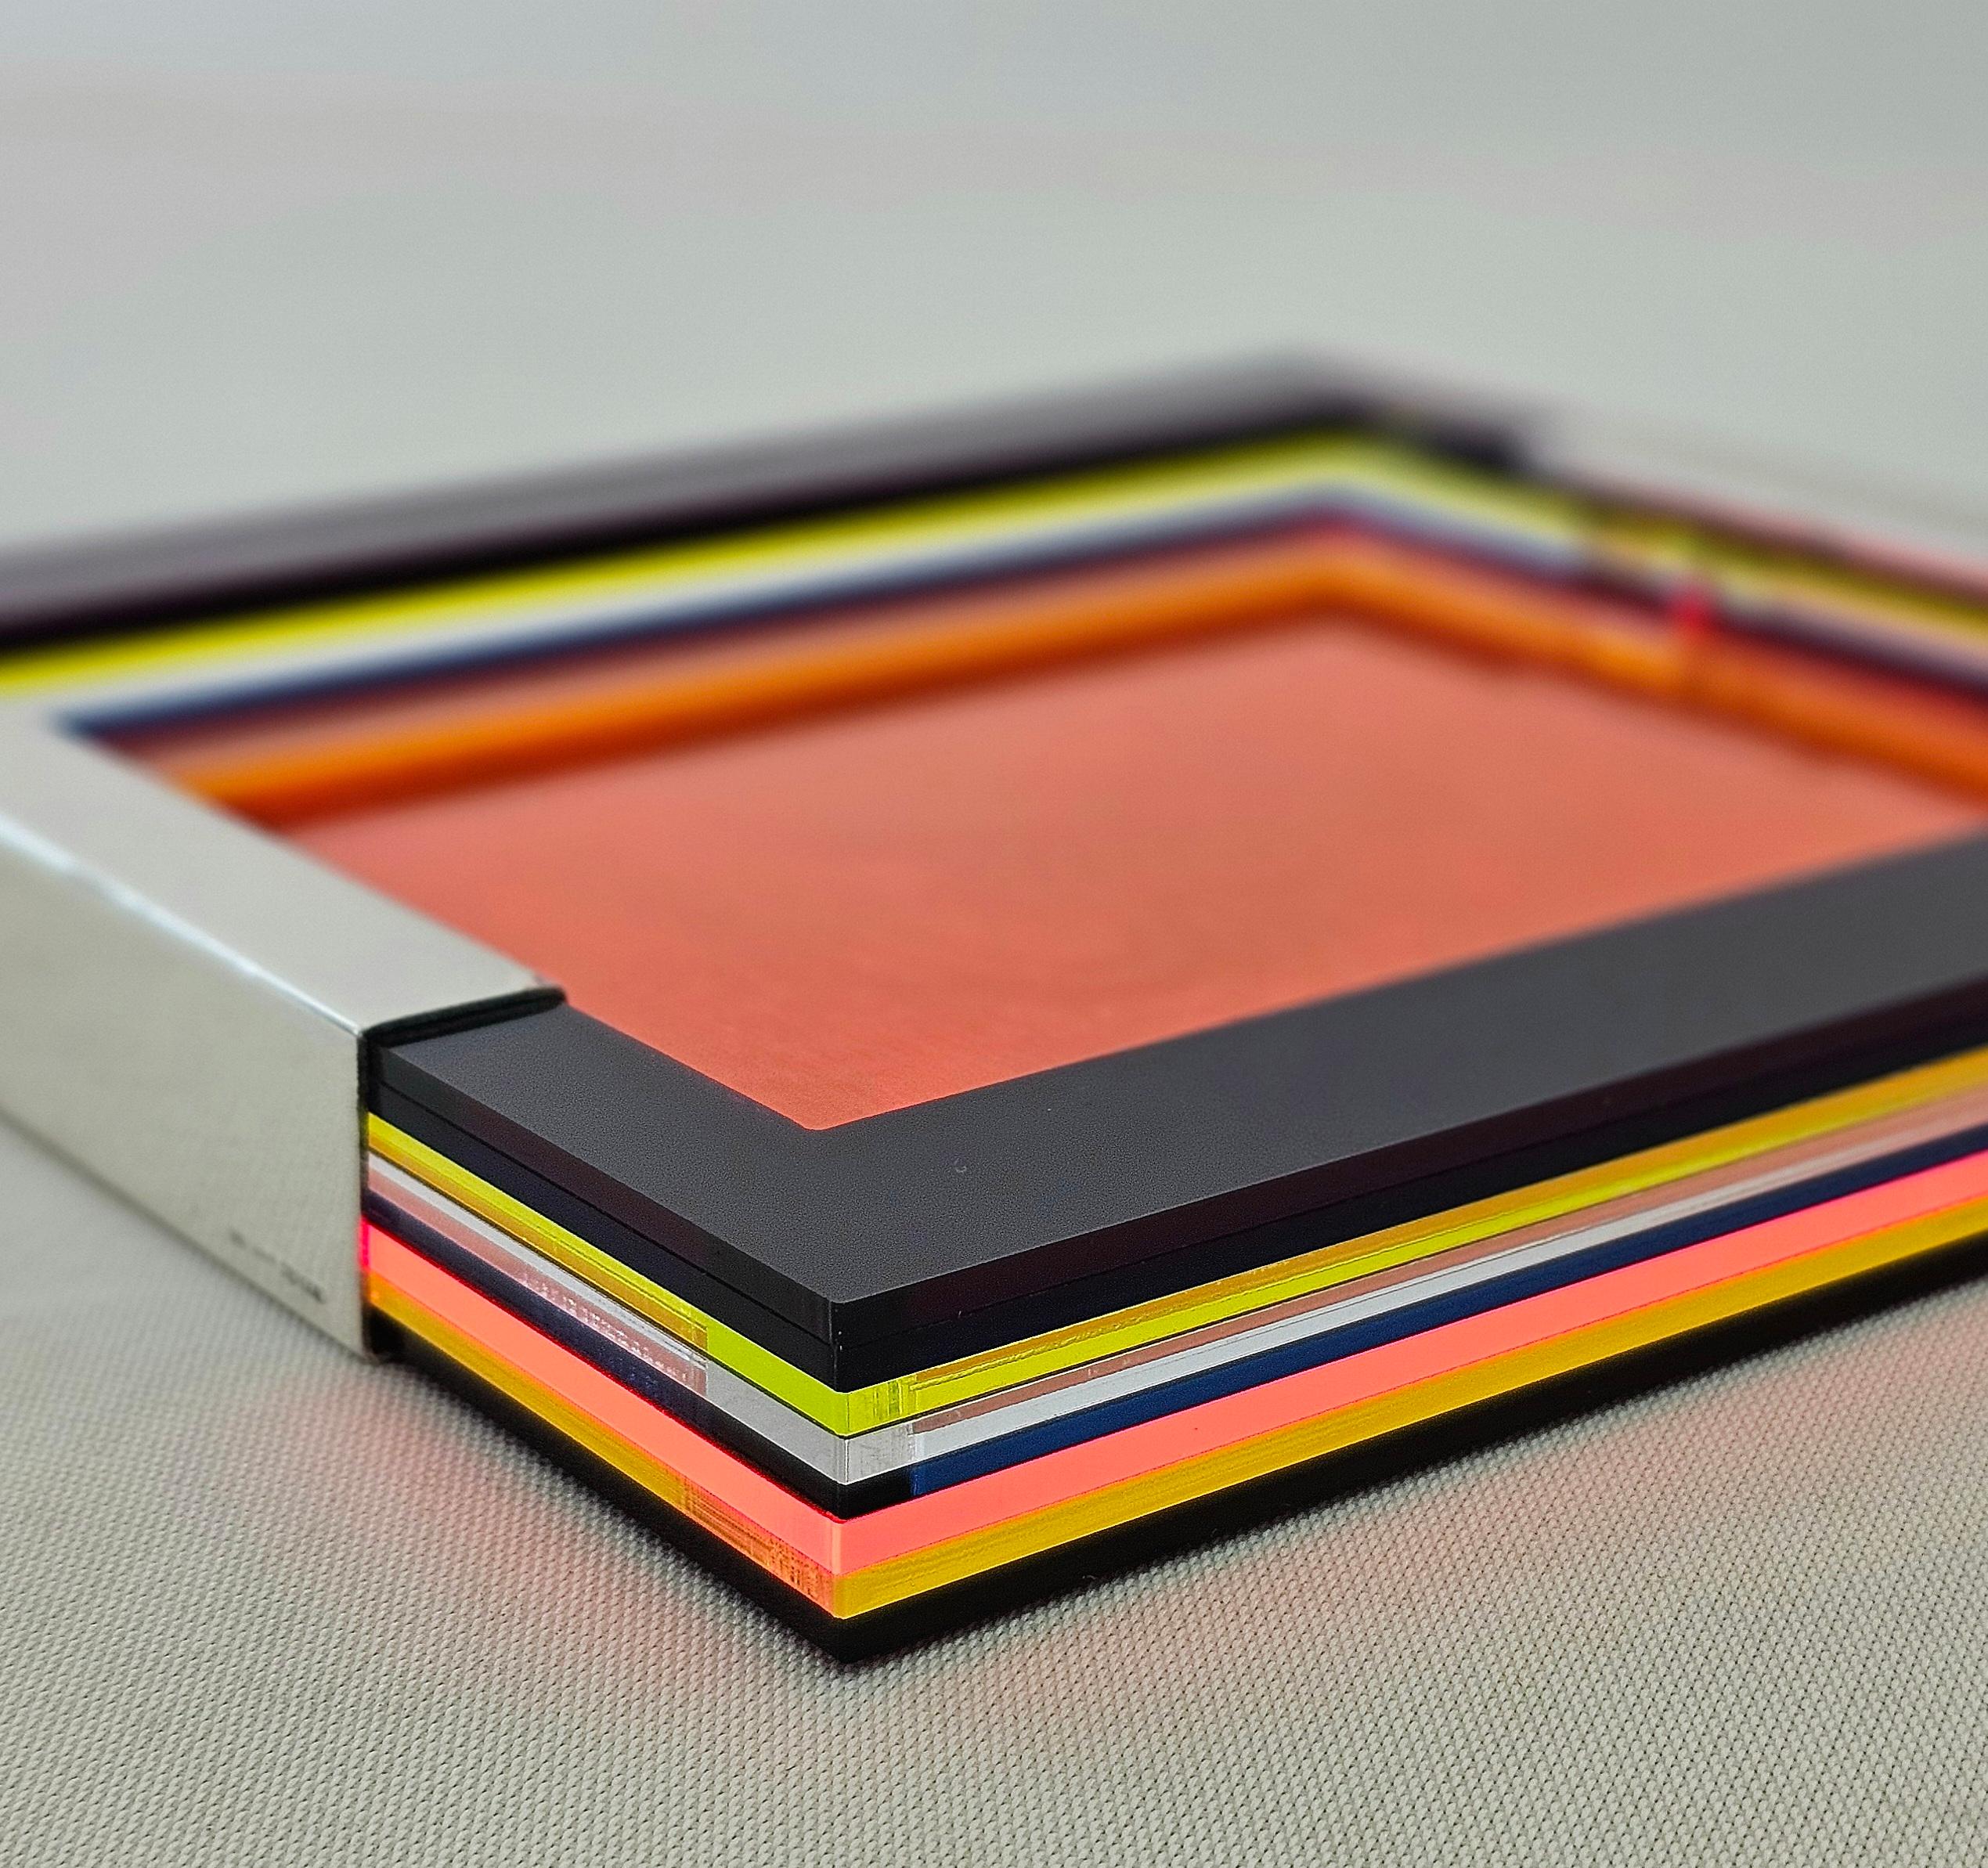 Eine ganz besondere Videopoche aus Plexiglas mit 925er Silberverzierung, acht sich überlappende Plexiglasplatten in verschiedenen Farben, die einen einzigartigen Effekt ergeben. Die Historizität von Greggio Silberwaren, Protagonist der